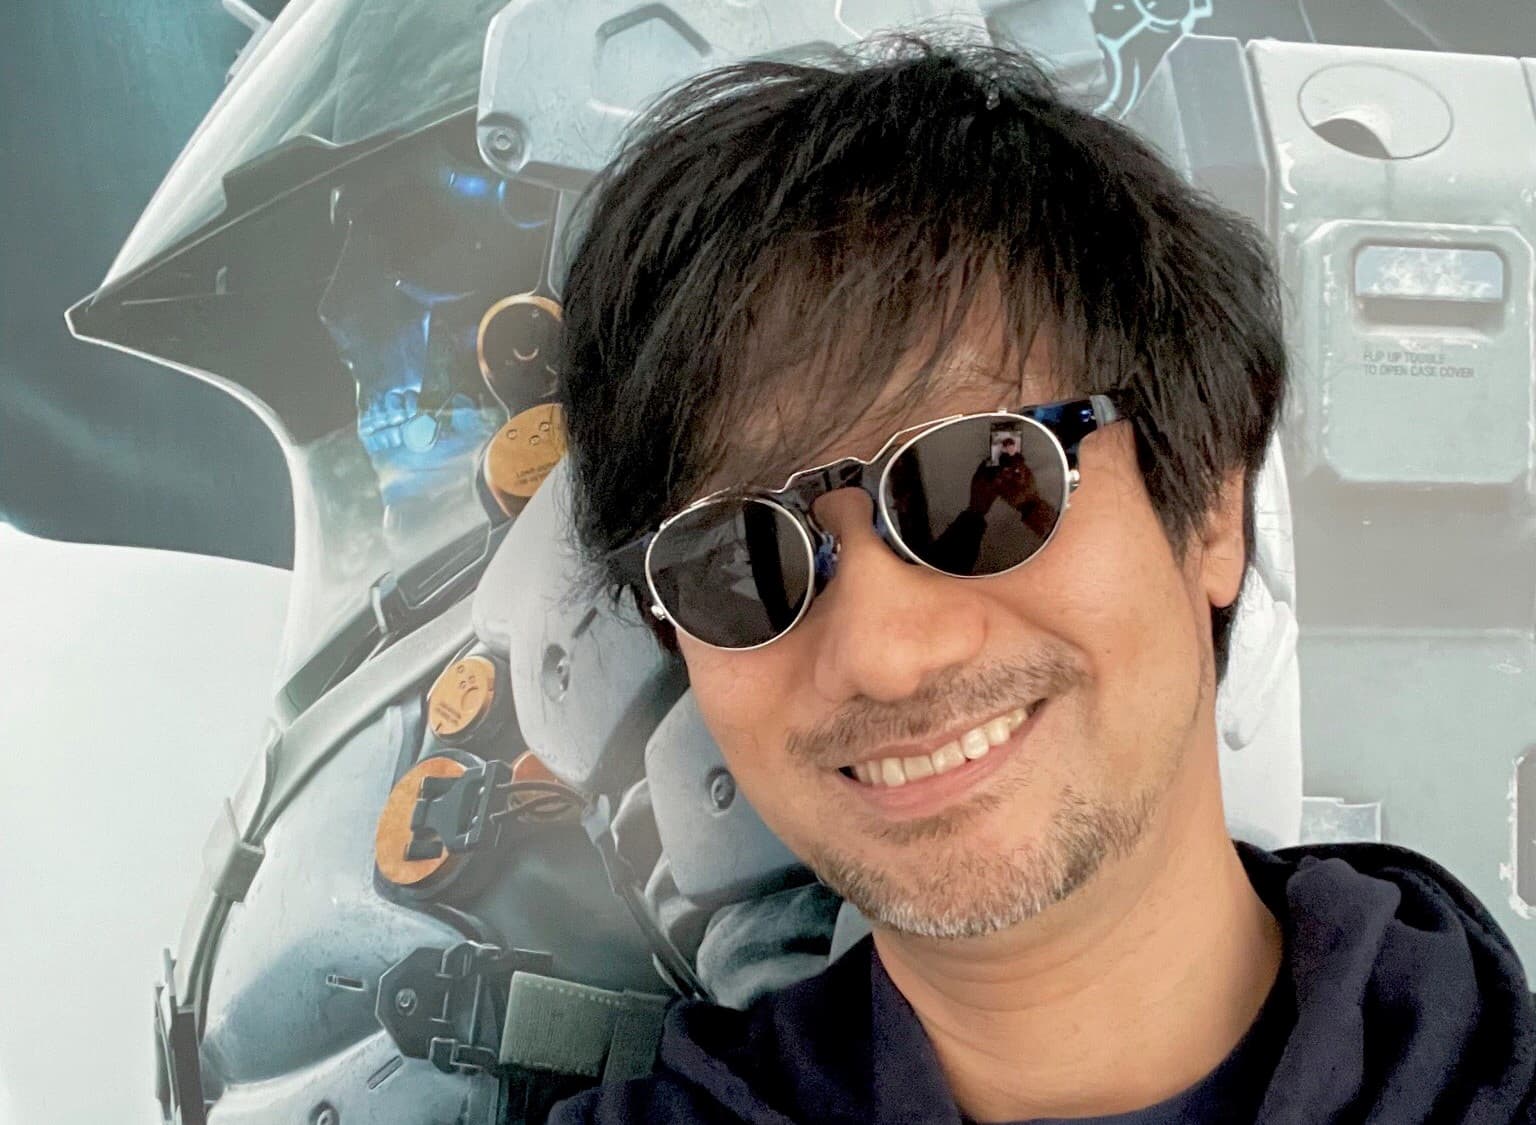 Kojima diz que está envolvido profundamente com filme de Death